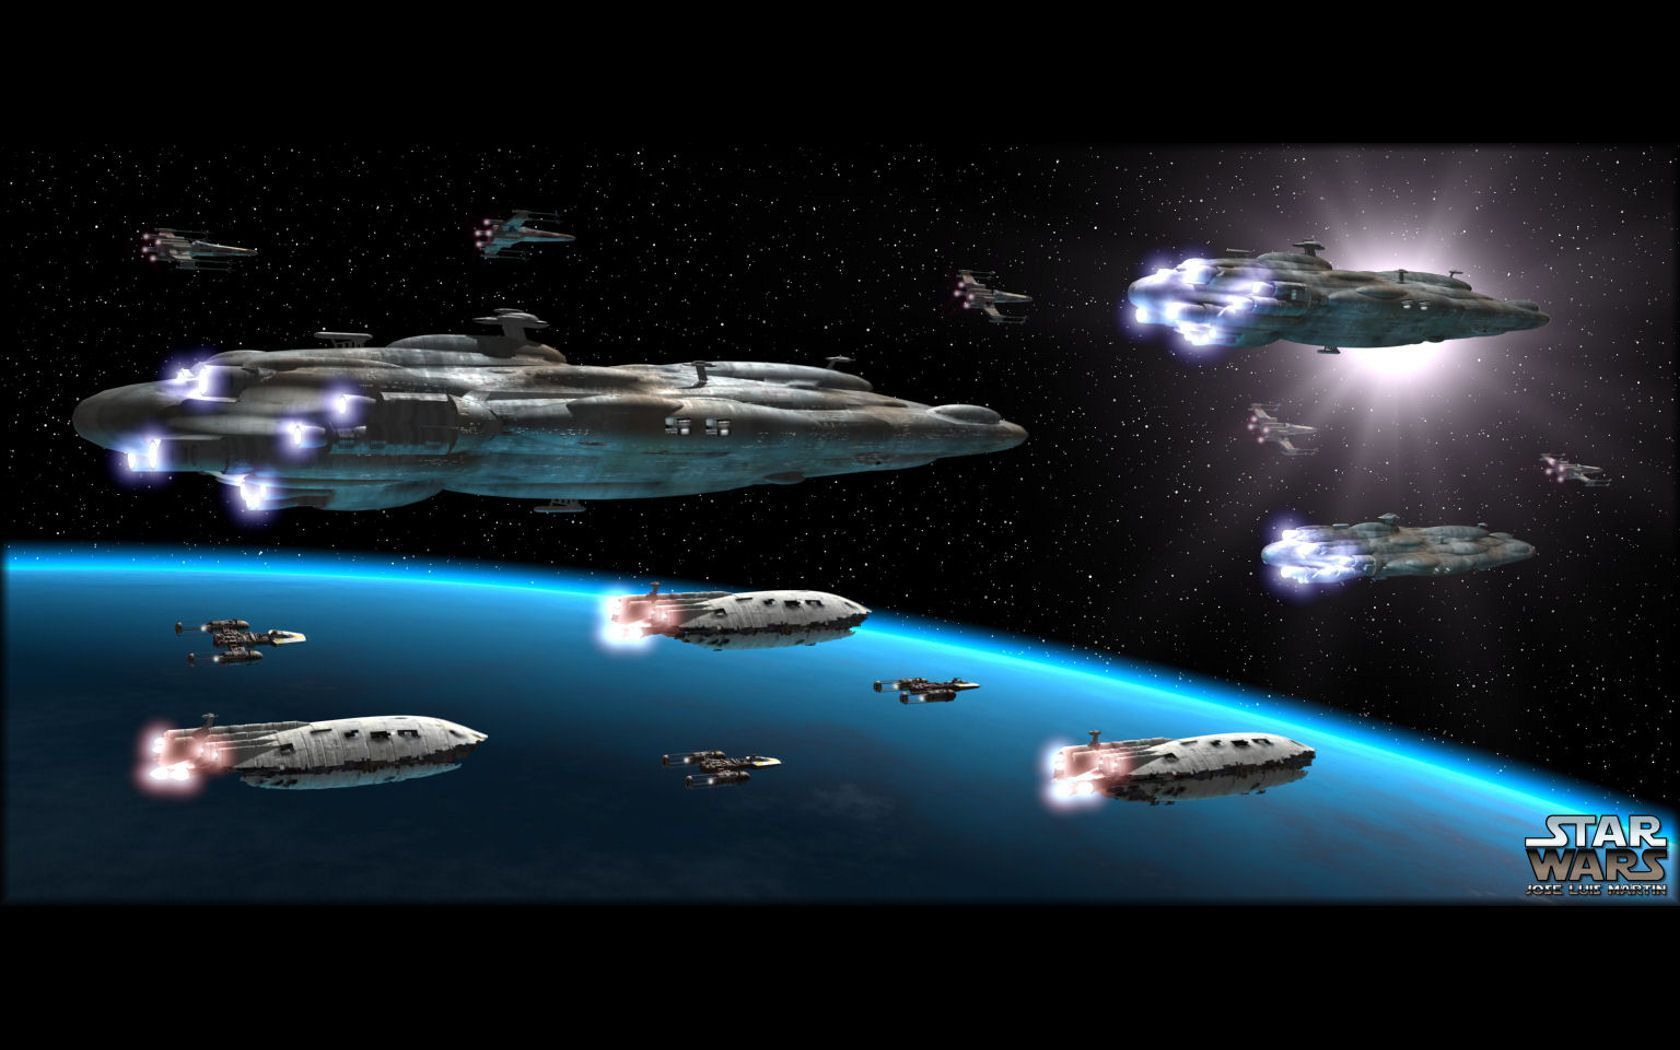 Star Wars. Star wars wallpaper, Star wars spaceships, Dark side star wars